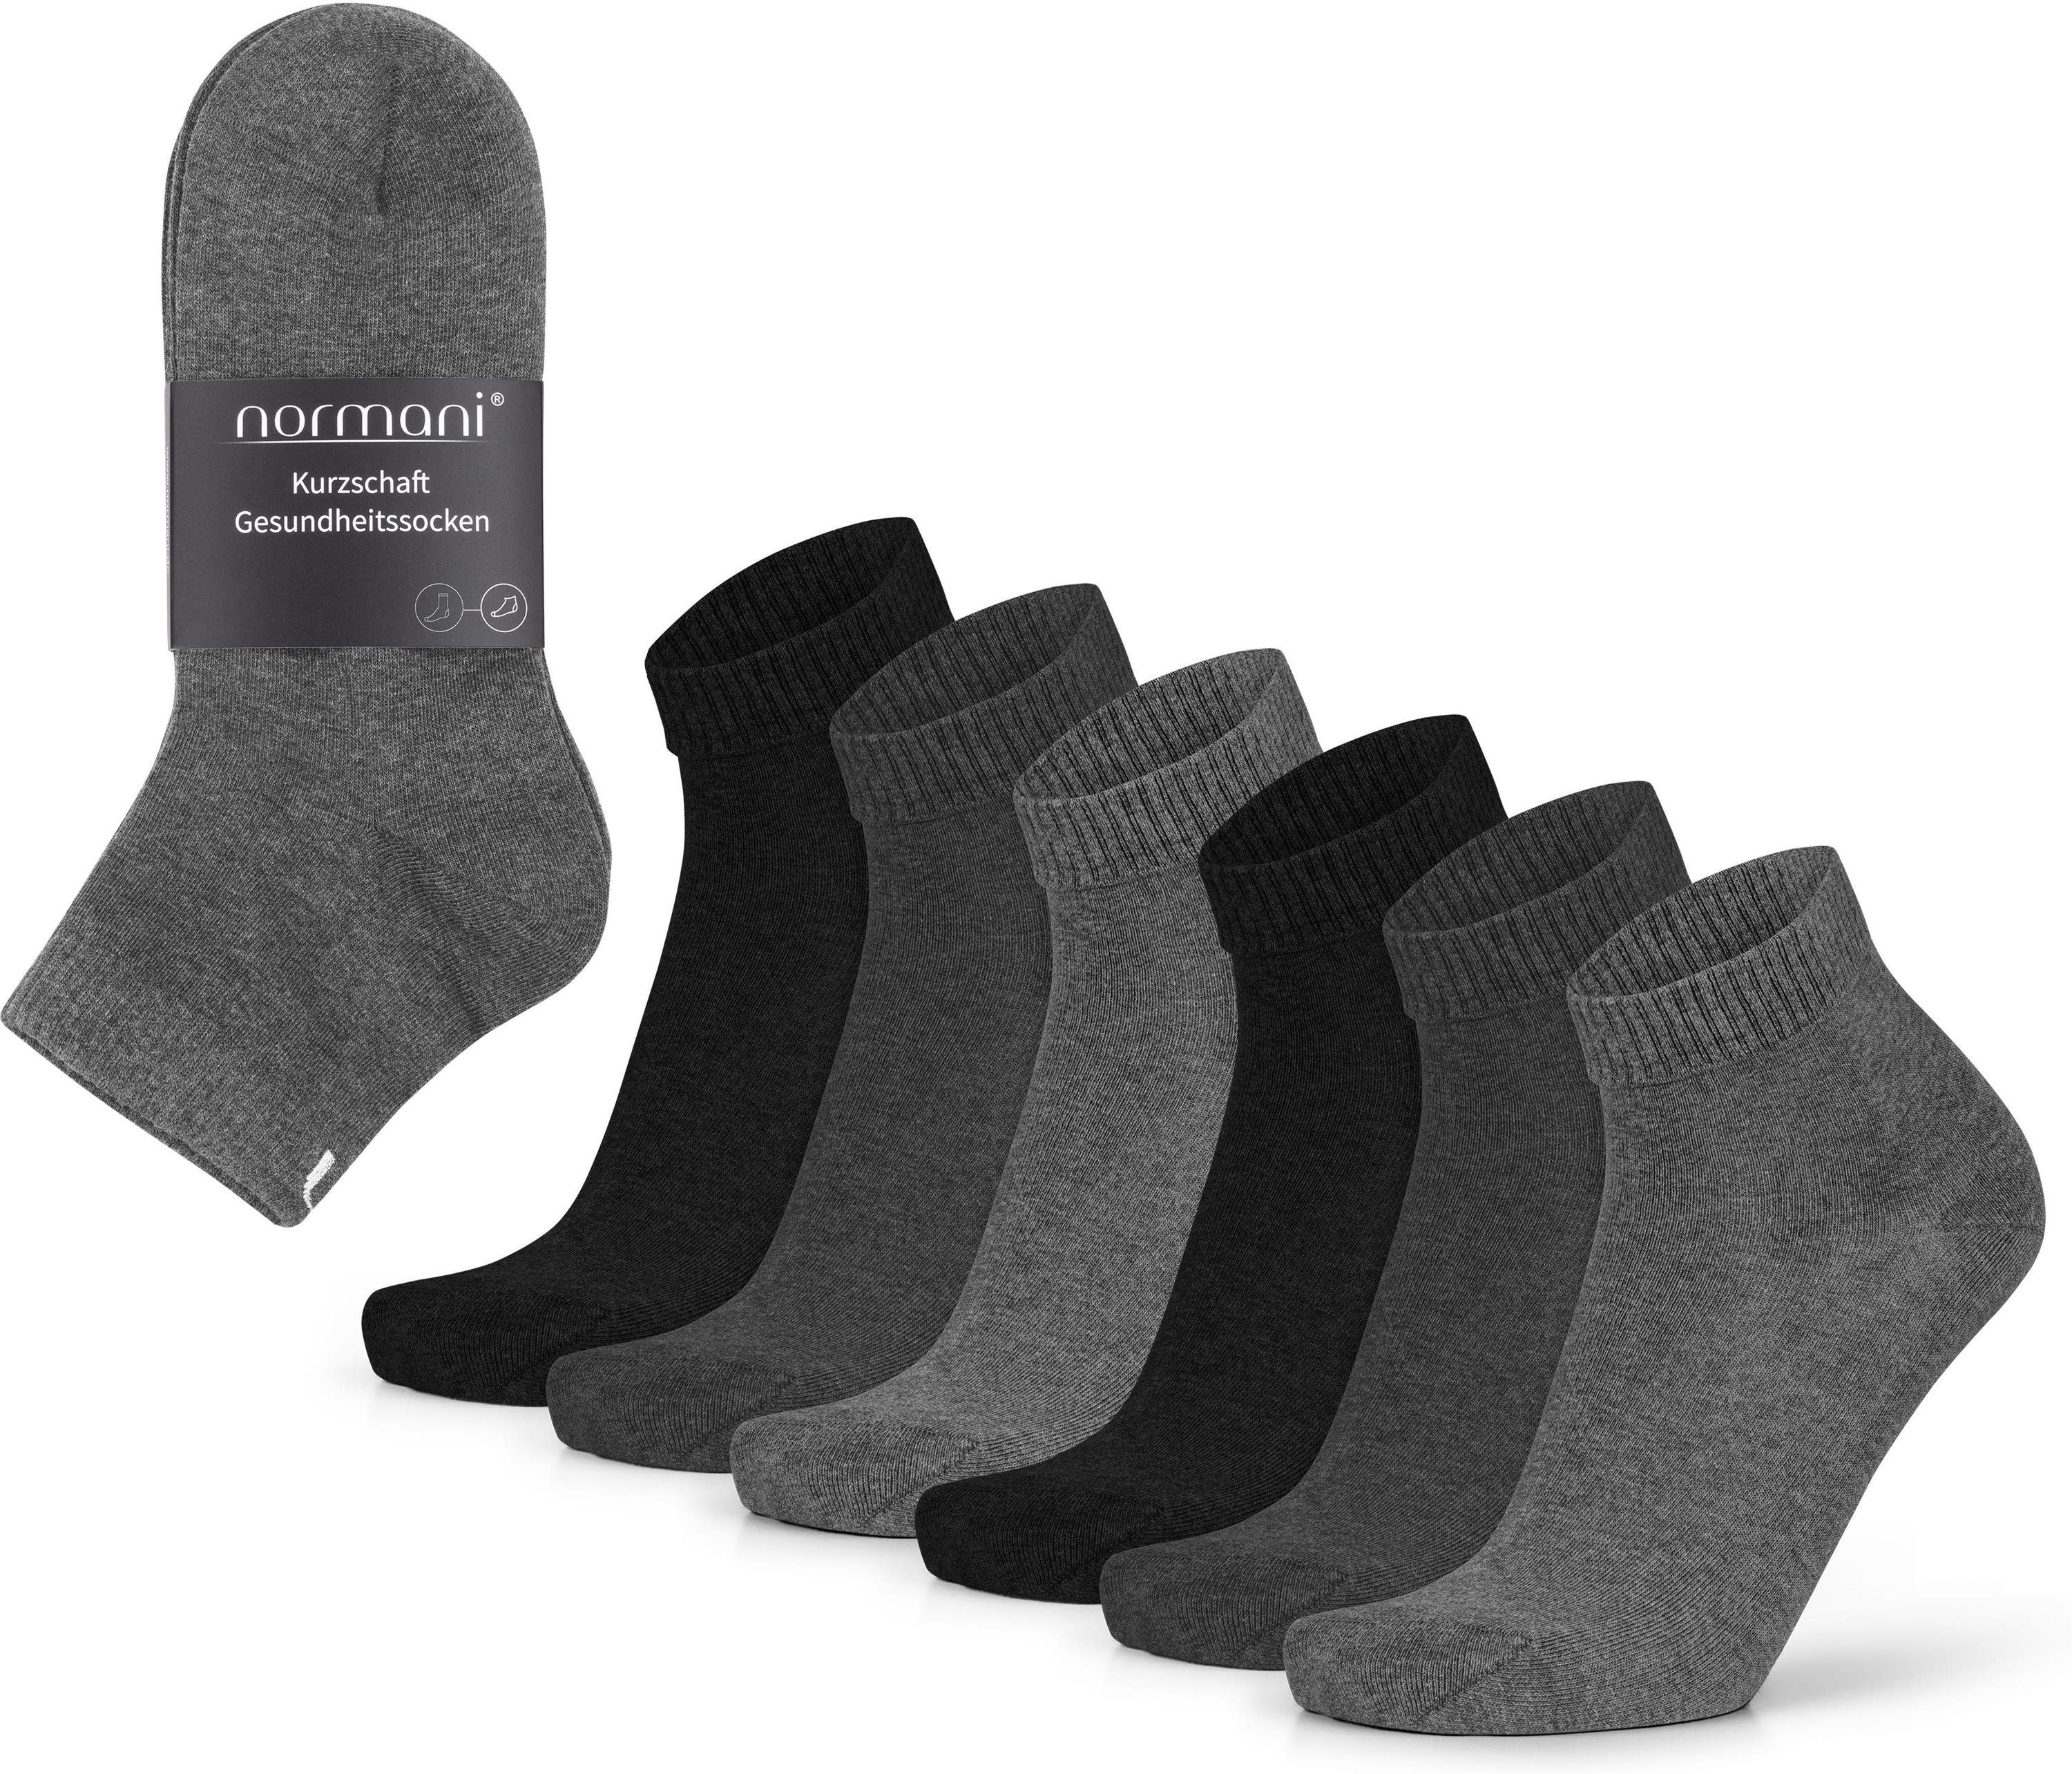 normani Sneakersocken (6 Paar) Kurzschaft Gesundheitssocken aus Baumwolle.